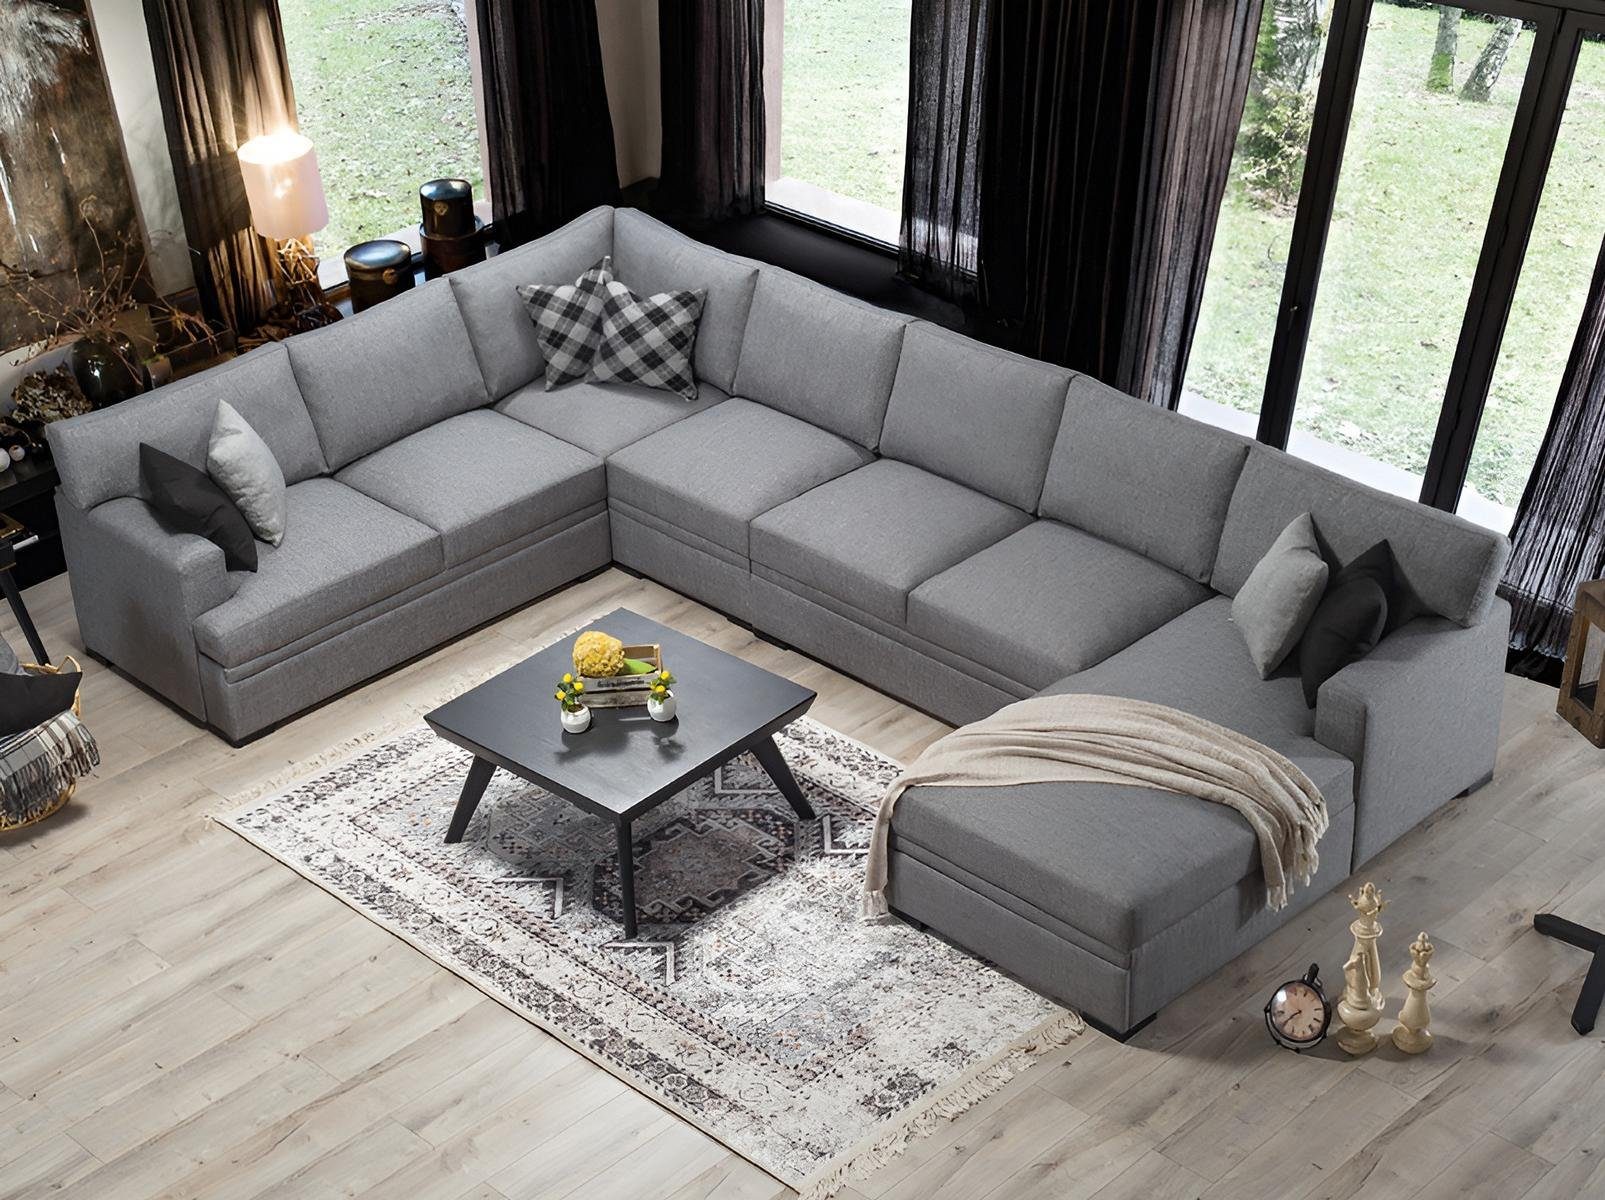 JVmoebel Ecksofa Modern Design Möbel Sofa U-Form Grau Wohnzimmer Einrichtung Neu, 1 Teile, Made in Europa